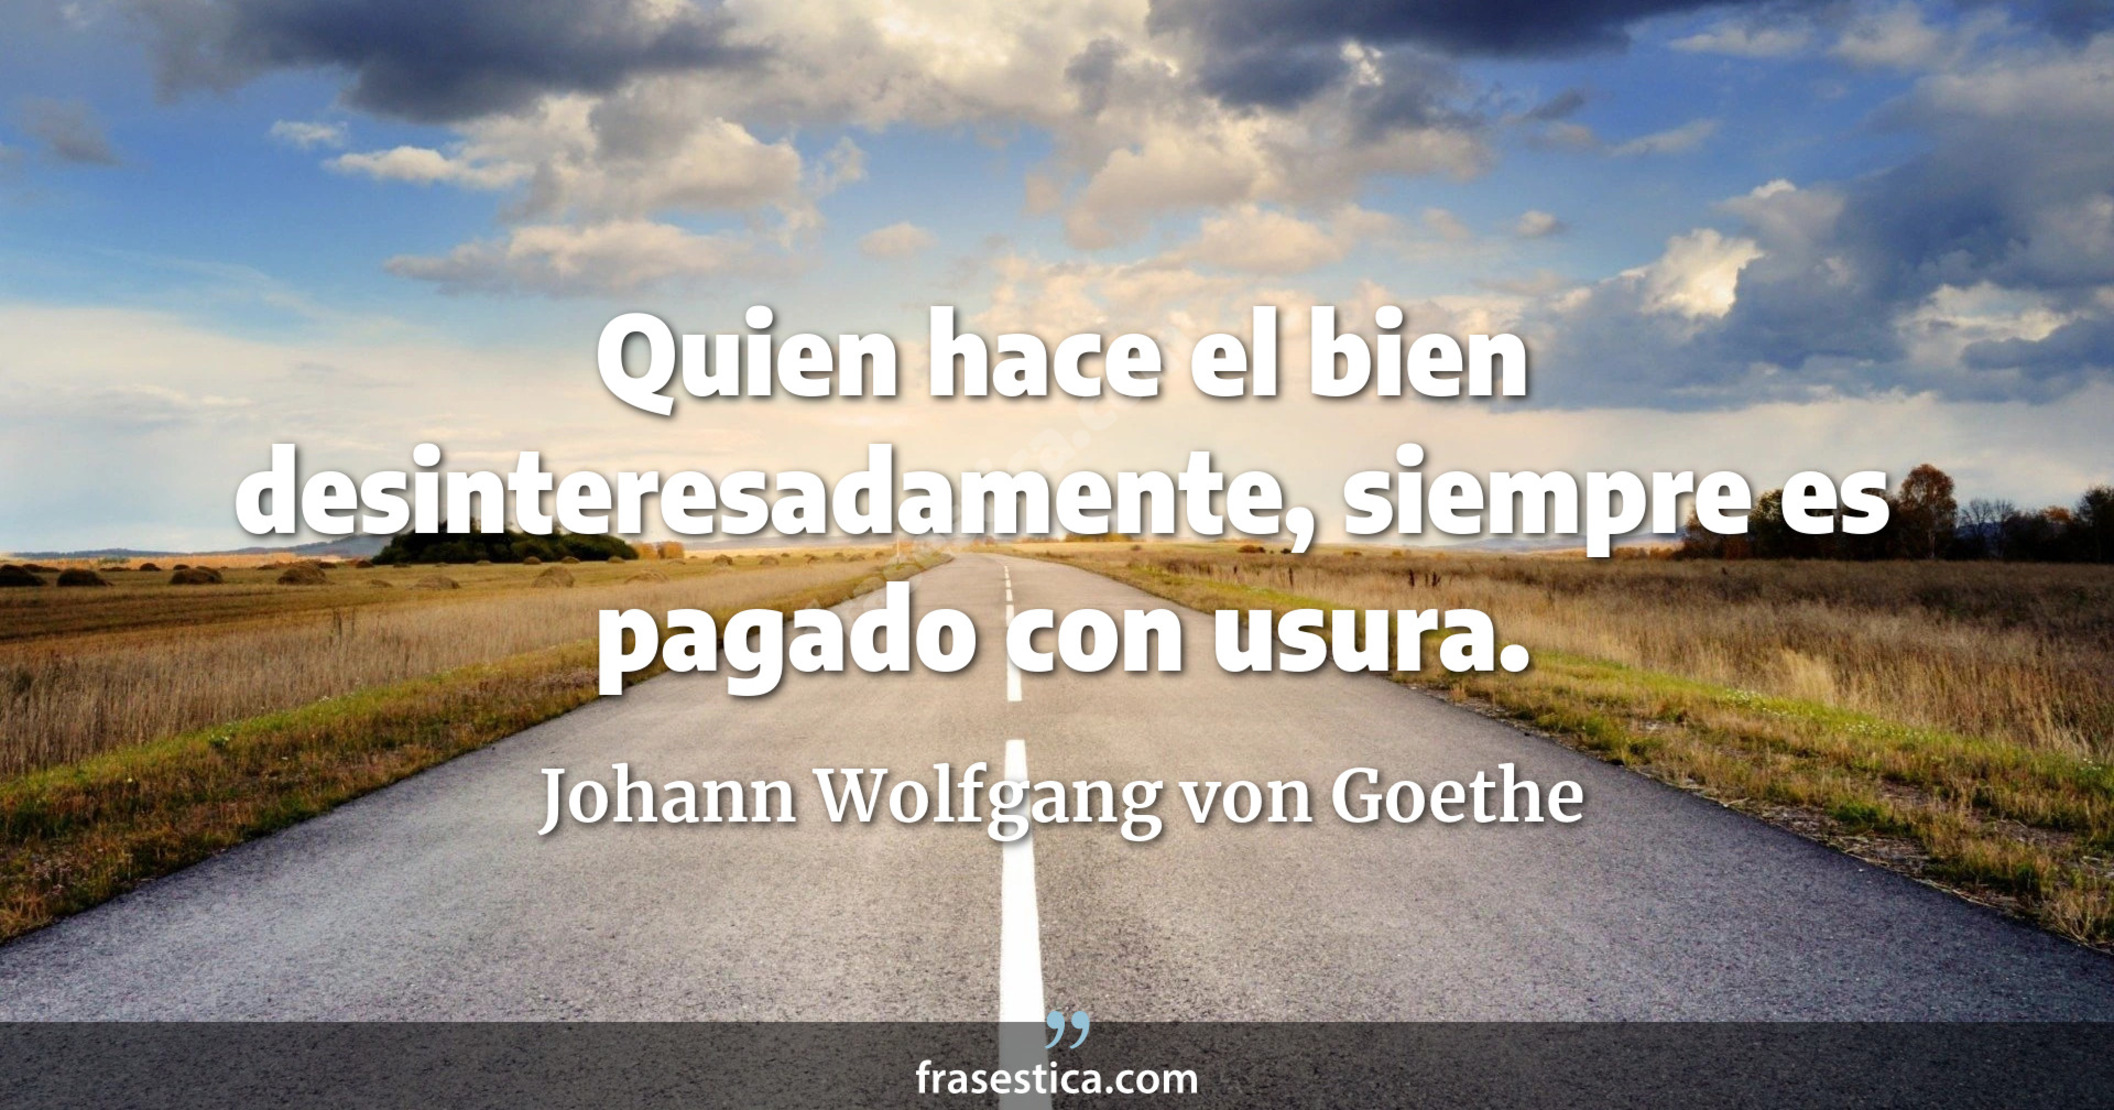 Quien hace el bien desinteresadamente, siempre es pagado con usura. - Johann Wolfgang von Goethe